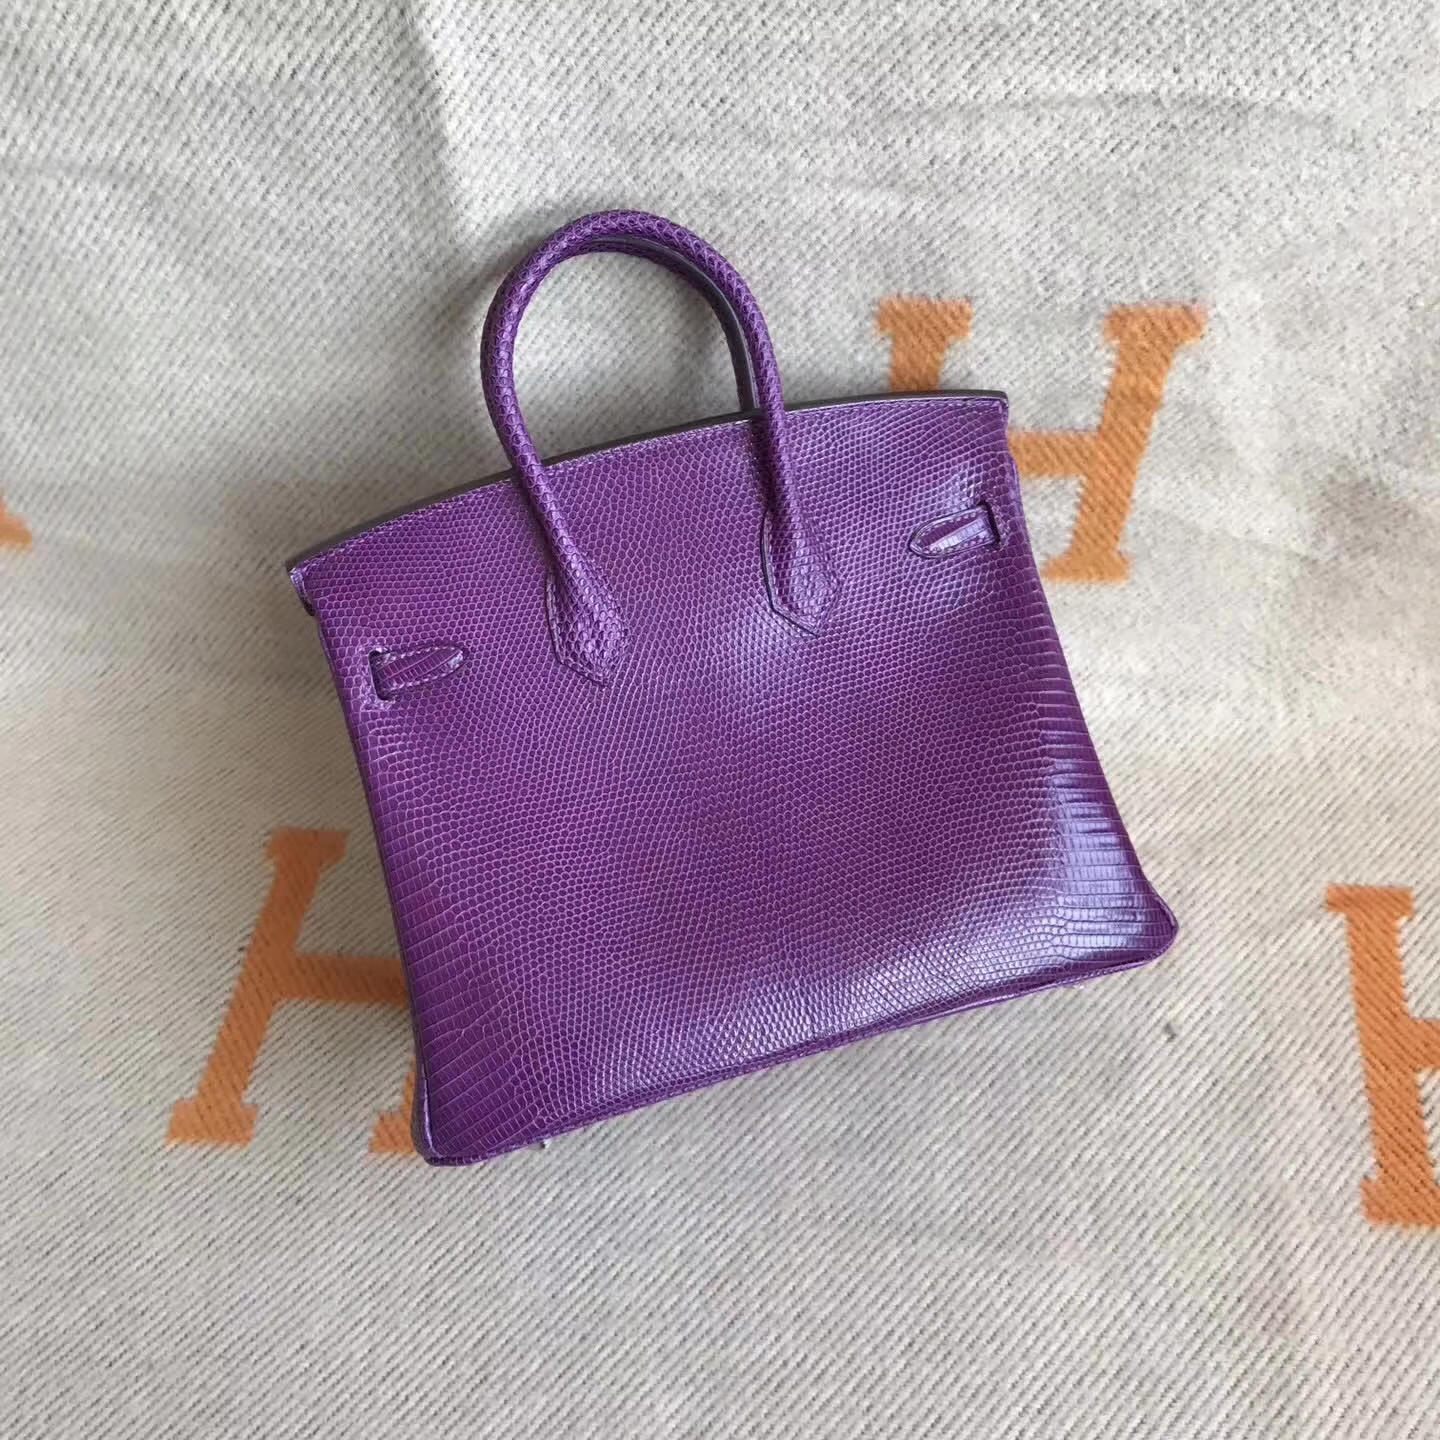 Elegant Hermes 9W Violet  Lizard Leather Birkin30cm Tote Bag Silver Hardware